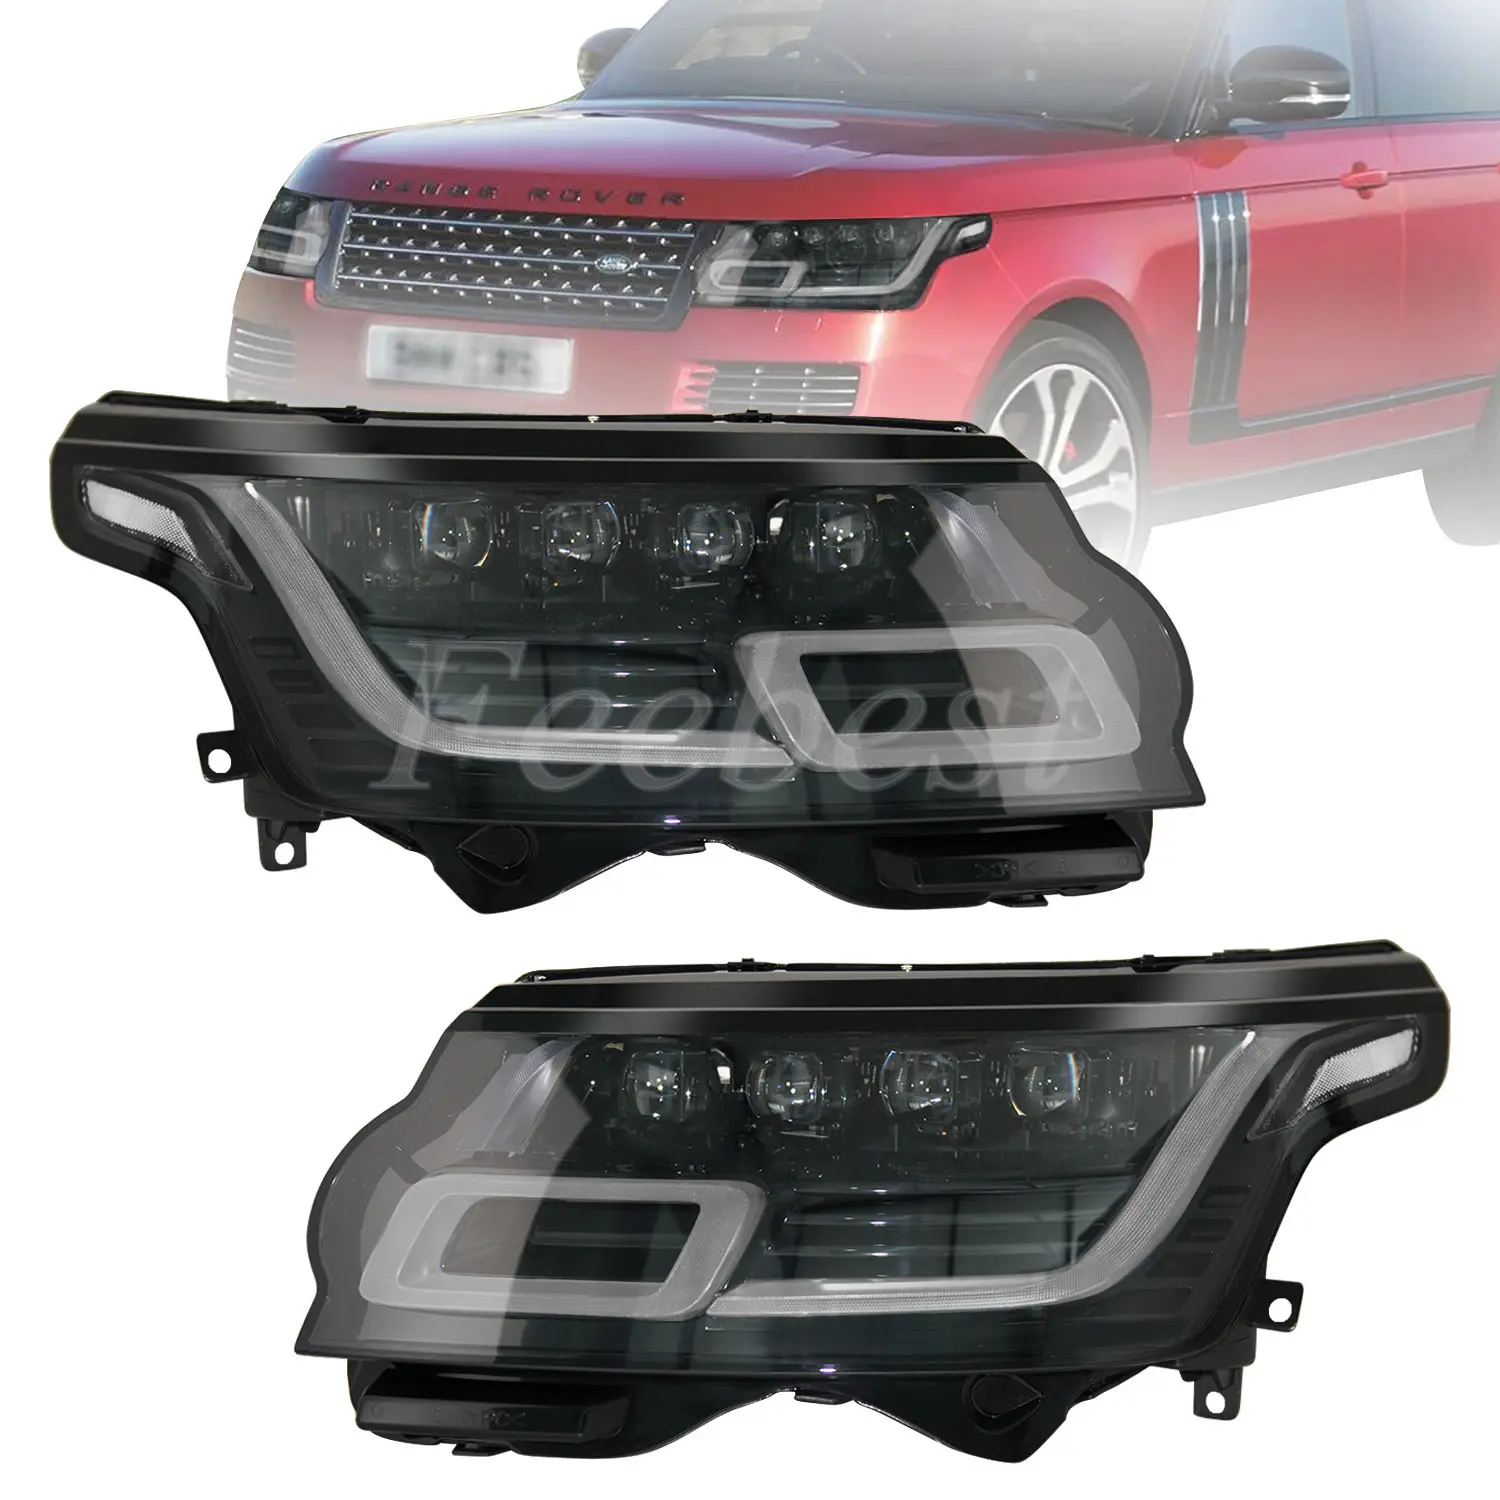 LED L405 Scheinwerfer Direct Facelift 4 Objektiv Scheinwerfer für Land Rover Range Rover Vogue 2013 2014 2015 2016 2017 Kein Body Kit Upgrade